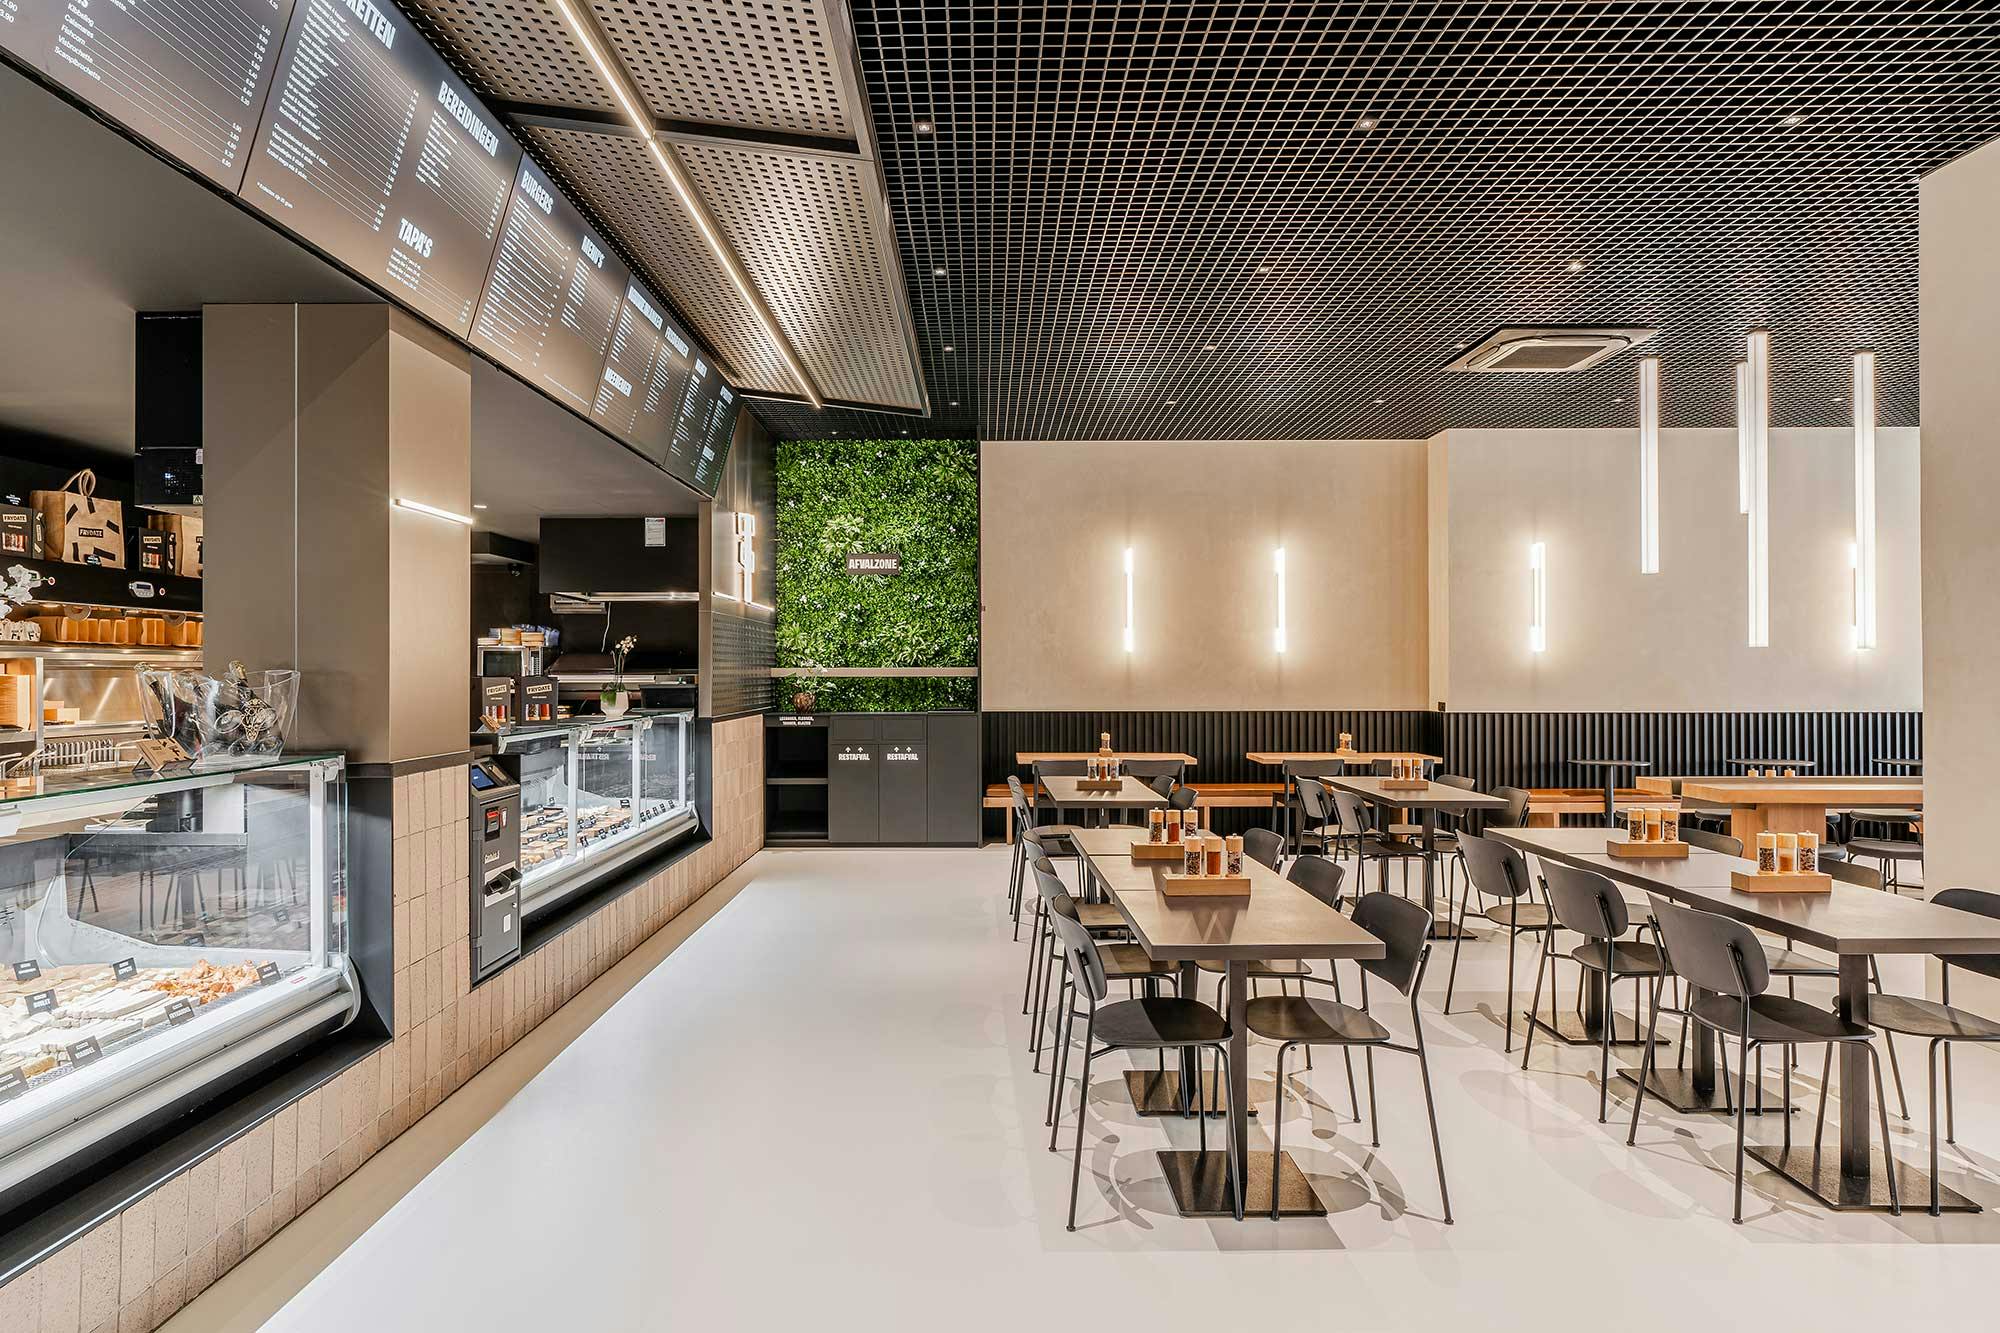 Imagen número 41 de la sección actual de Fusion 3.0, el restaurante italiano de estilo industrial con Silestone aportando calidez